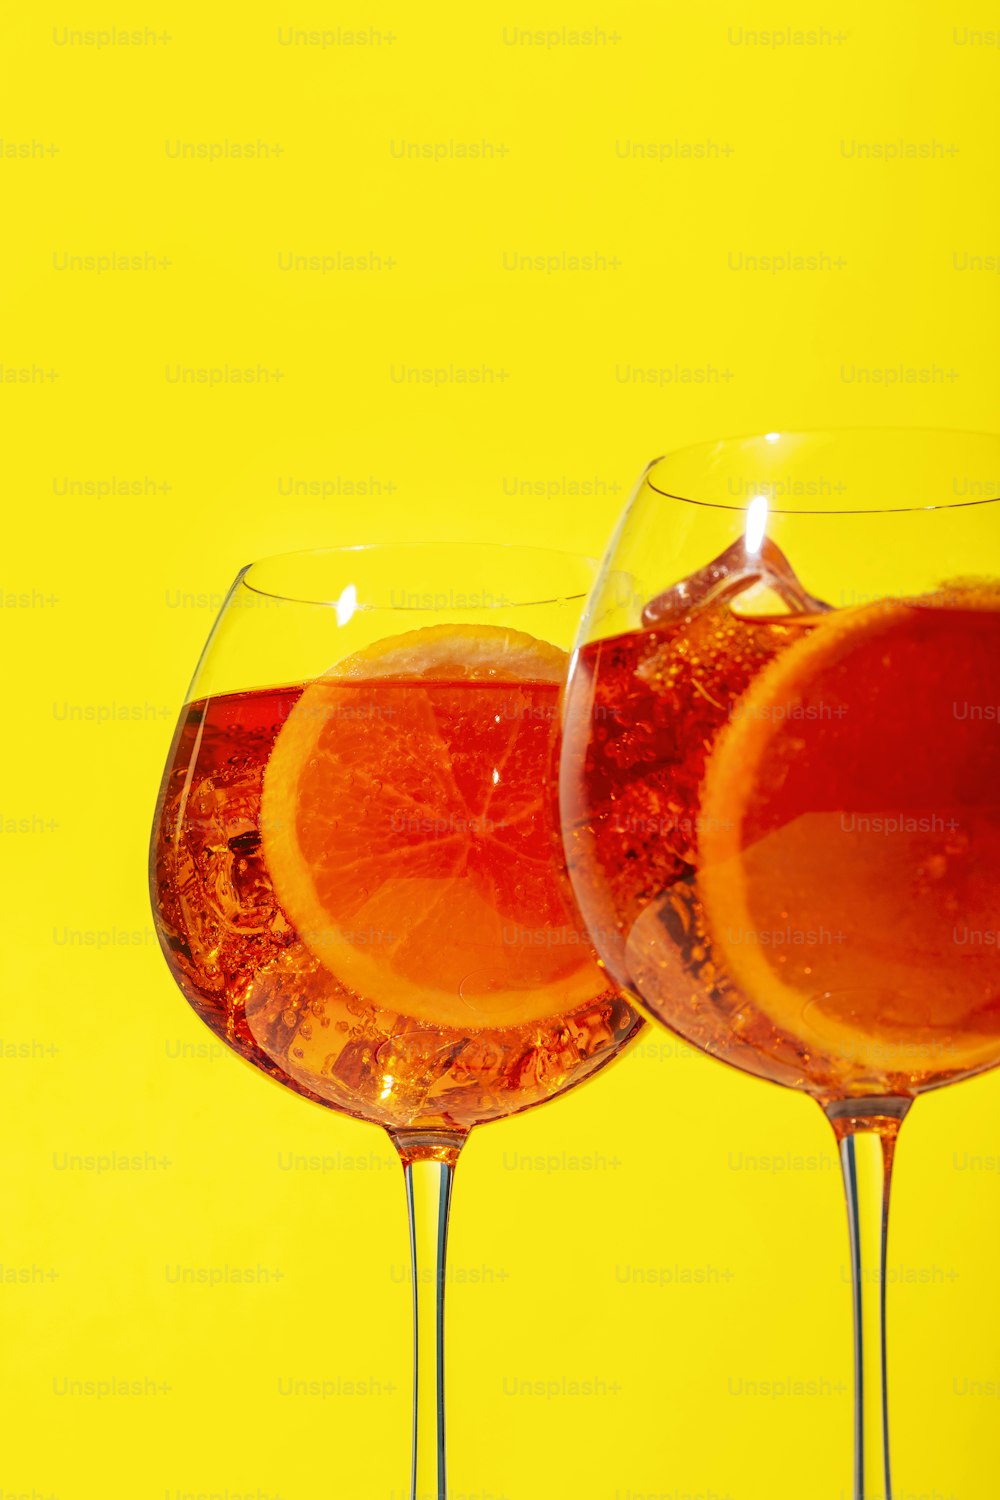 Spritz, un cocktail avec du Prosecco pétillant, de l’amer, de l’eau de Seltz et une tranche d’orange, sur fond jaune